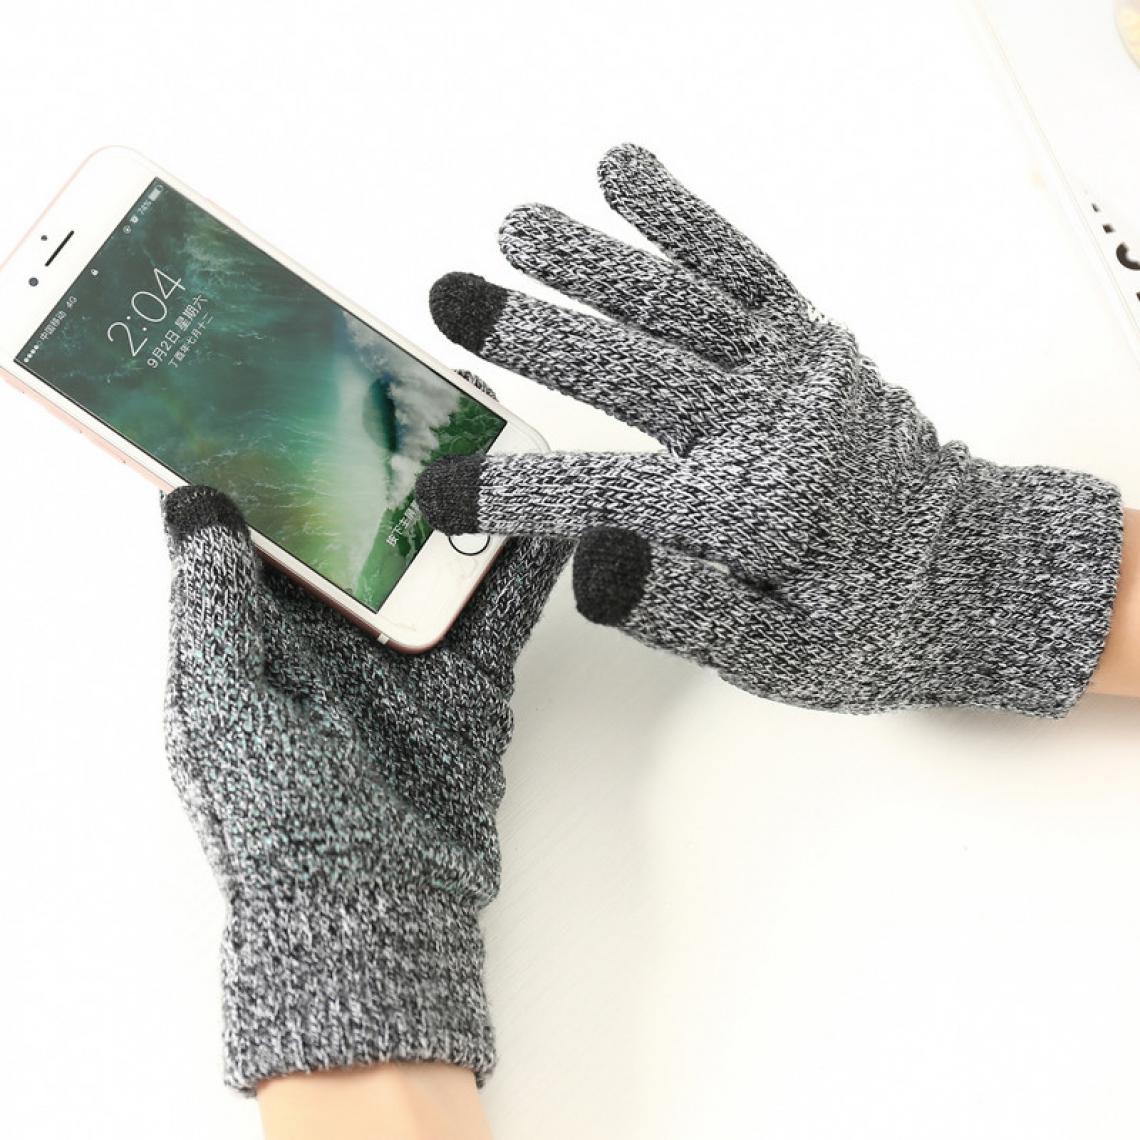 Shot - Gants Homme tactiles pour WIKO View 4 Smartphone Taille M 3 doigts Hiver (GRIS) - Autres accessoires smartphone